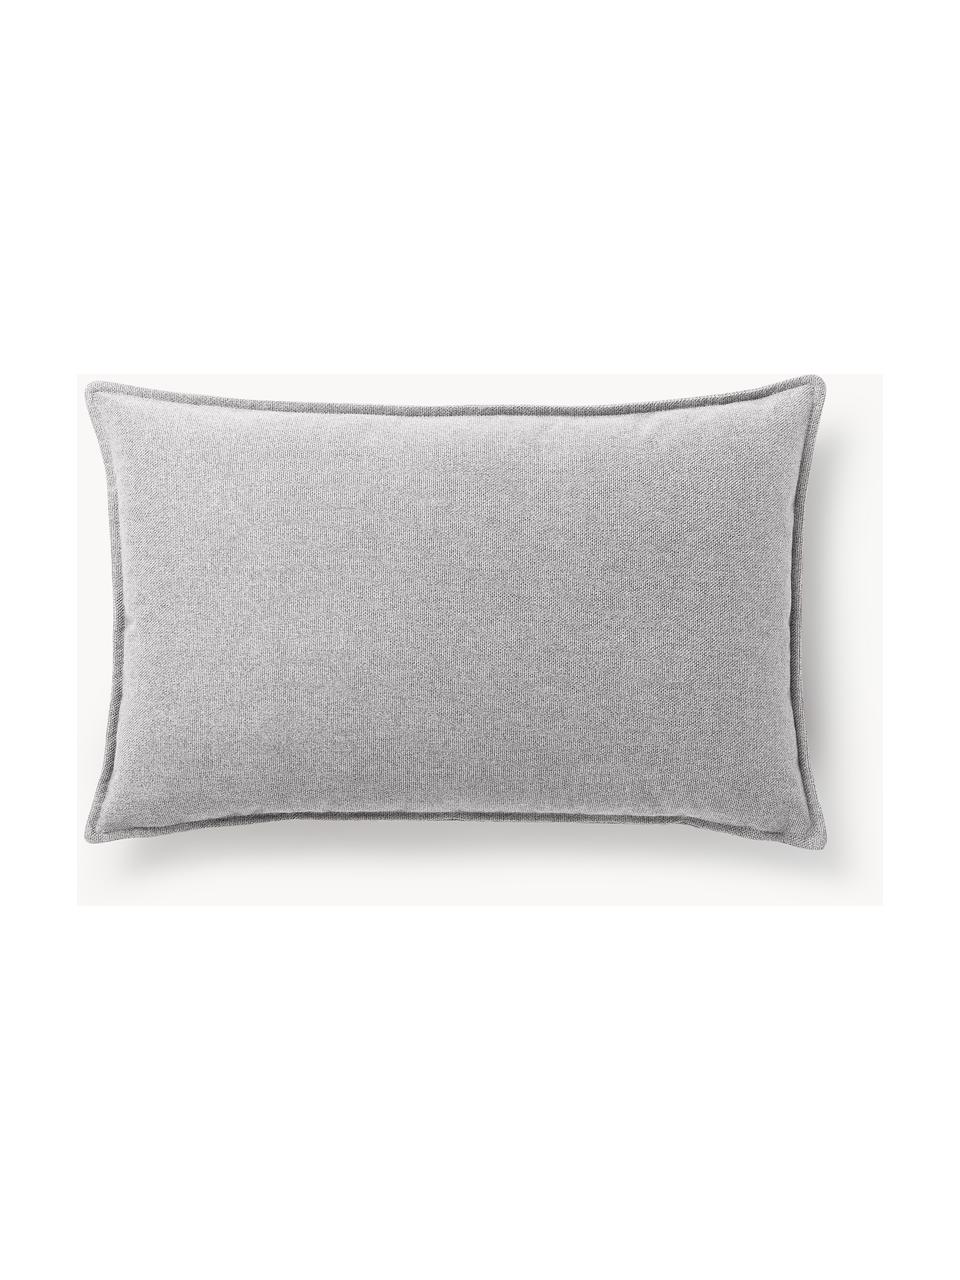 Cuscino decorativo Lennon, Rivestimento: 100% poliestere, Tessuto grigio, Larg. 50 x Lung. 80 cm